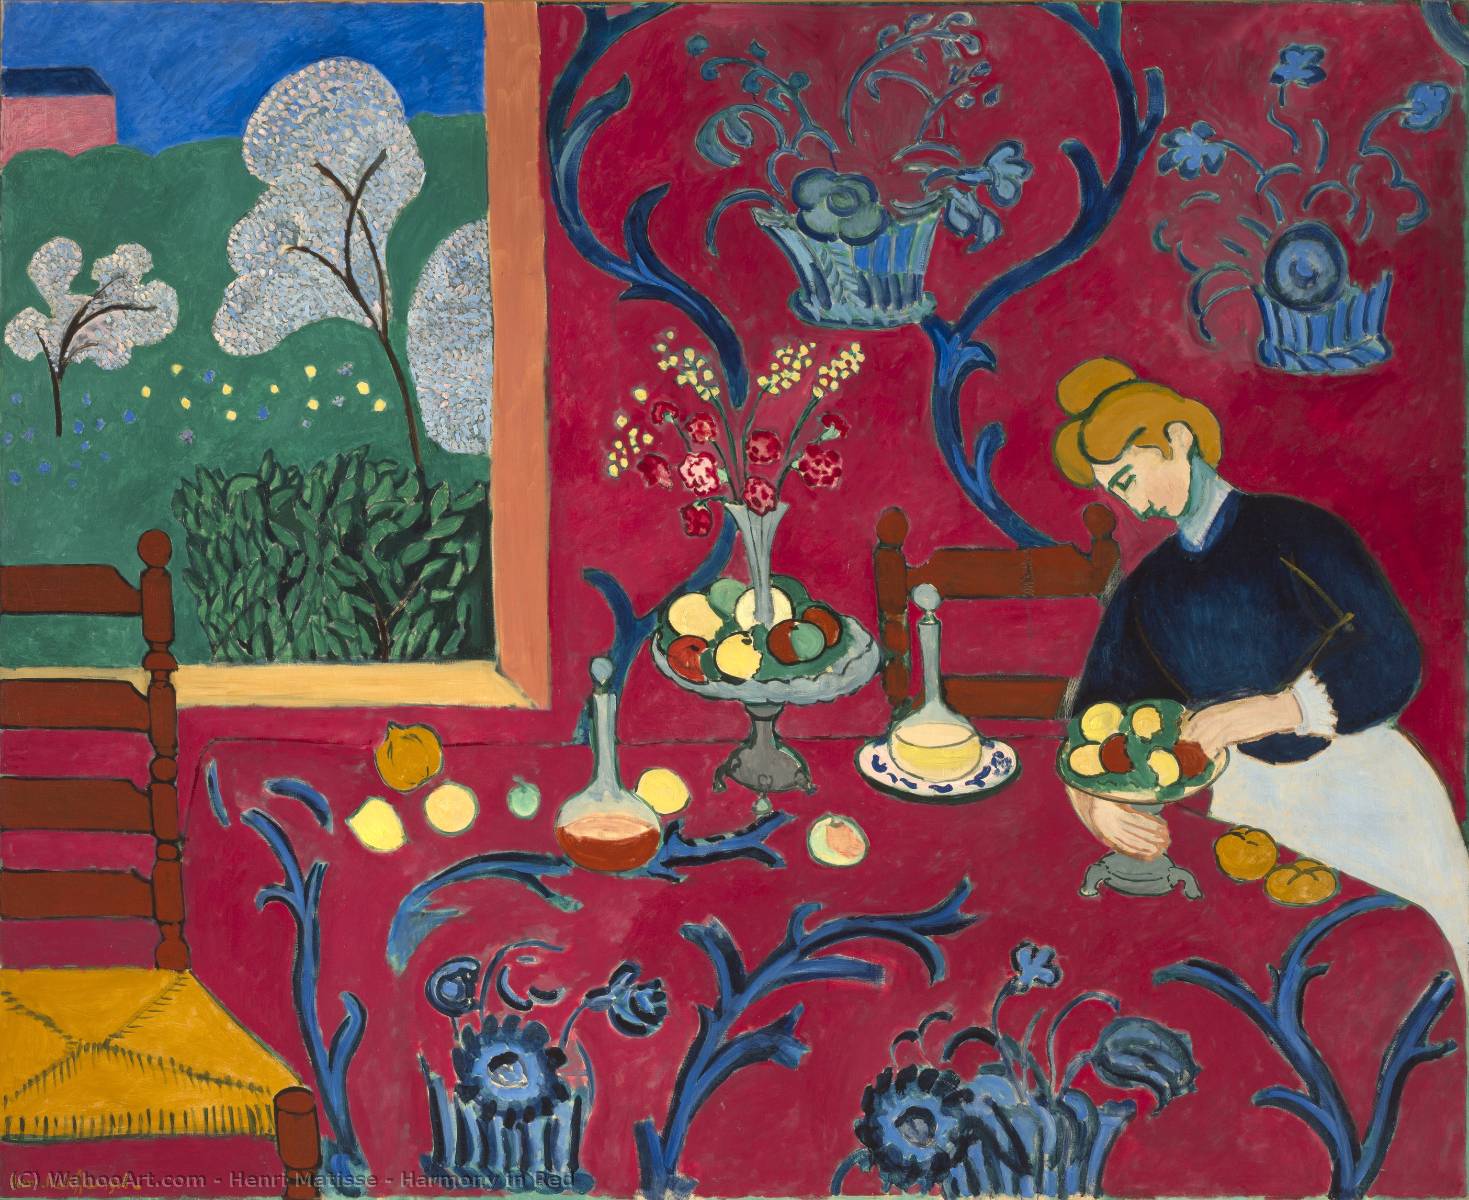 Henri-Matisse-Harmony-in-Red-paris-zigzag